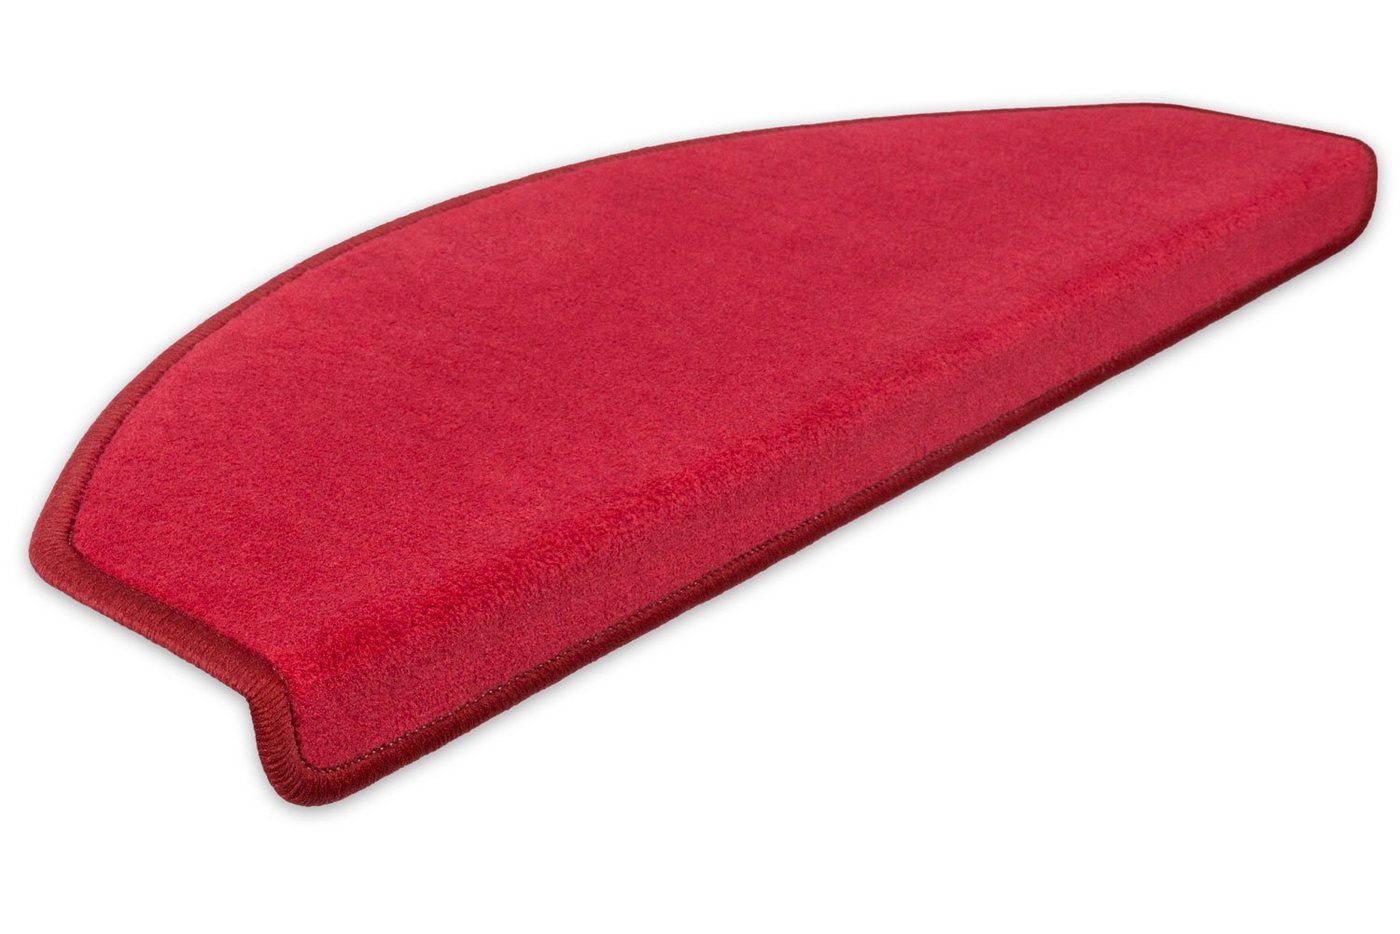 Stufenmatte Stufenmatten Vorwerk Uni Halbrund Sparset Rot 15 Stück, Metzker®, halbrund, Höhe: 7 mm, 15 Stück im Set - Rot von Metzker®